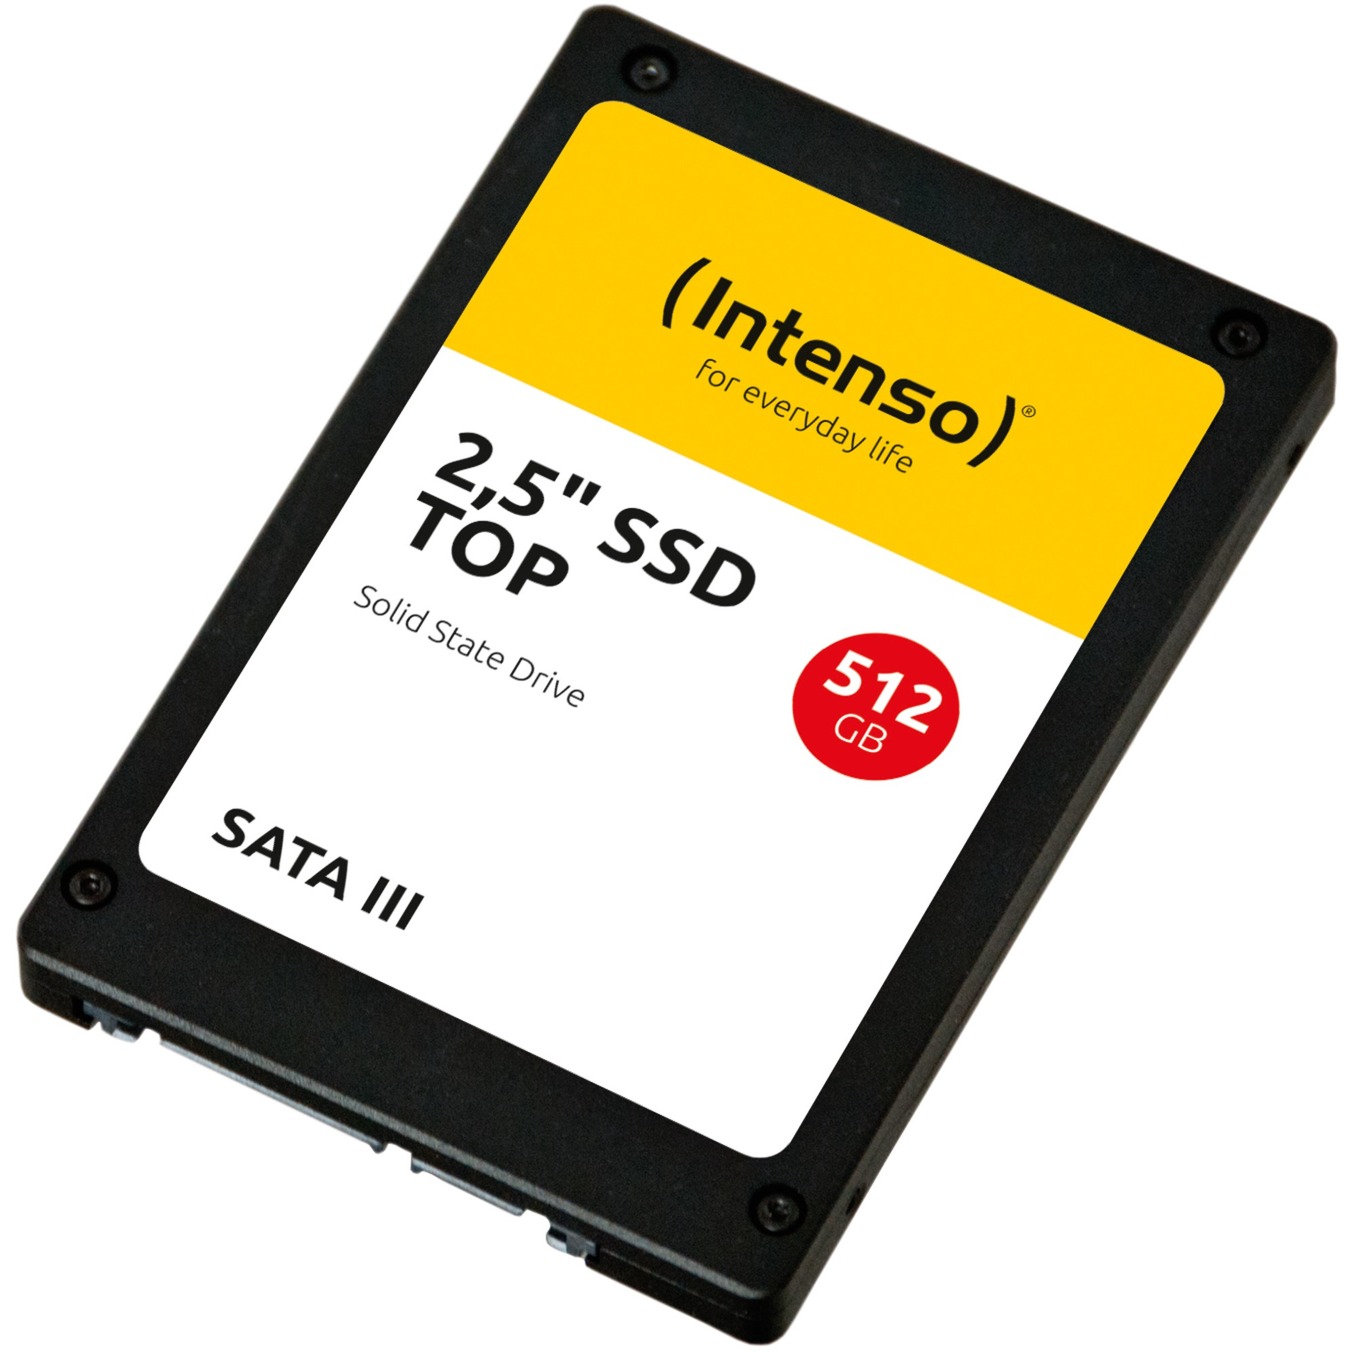 TOP SSD 512 GB von Intenso